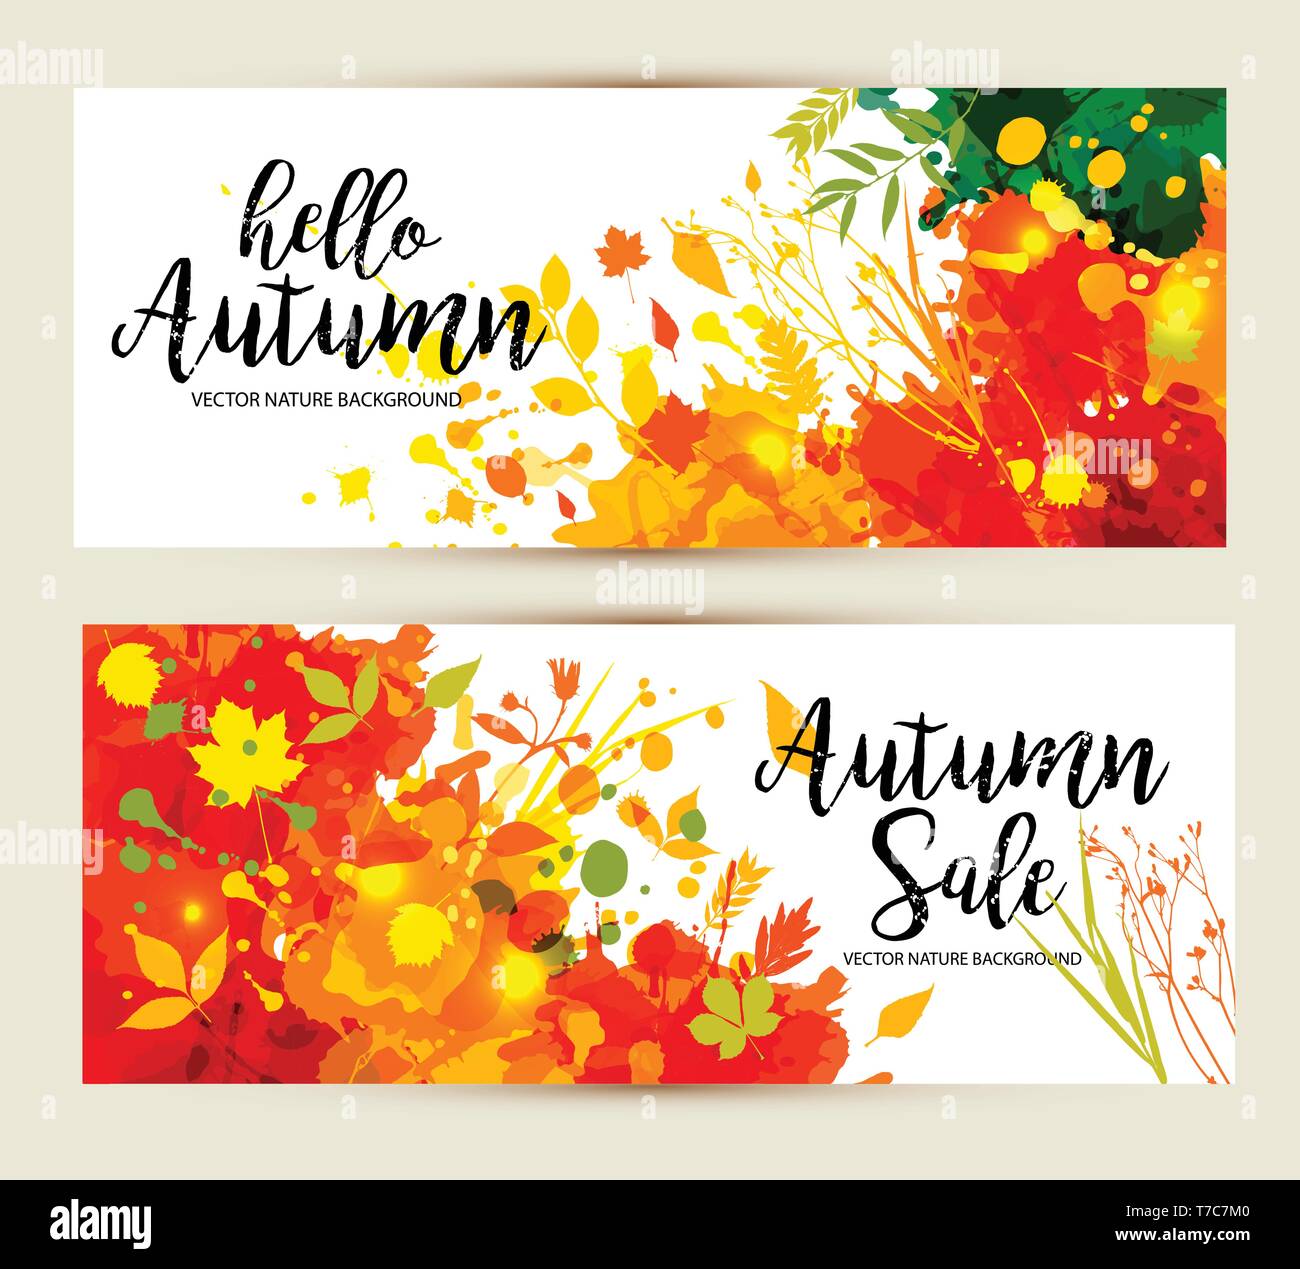 Kalligrafische Text Verkauf auf multicolor blots Hintergrund. Hand grunge blots Elemente dargestellt. Herbste Banner gesetzt. Stock Vektor